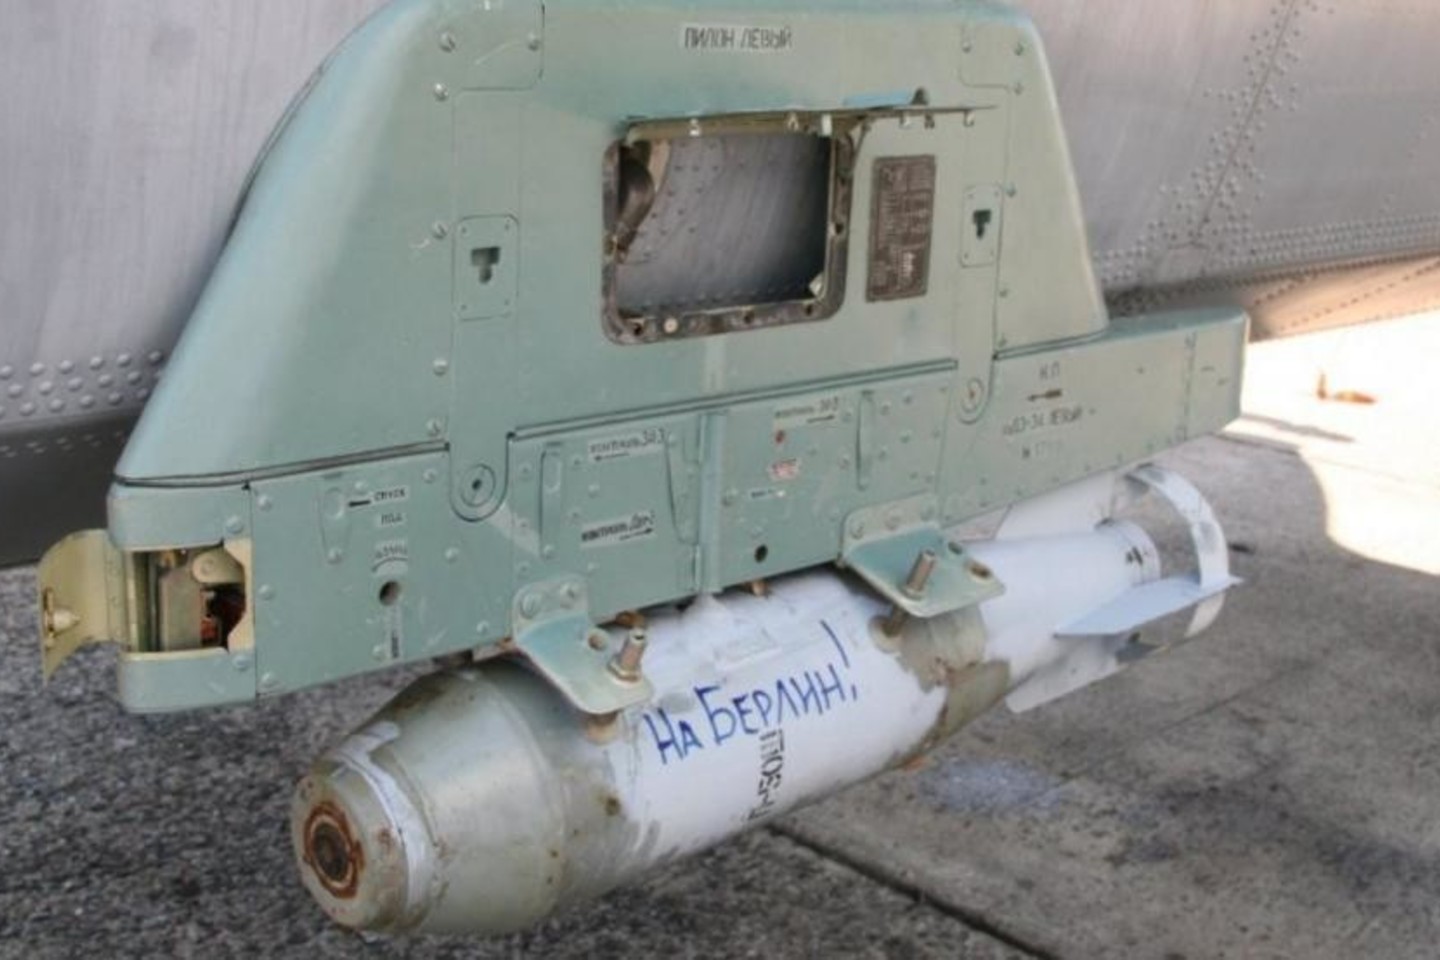 Vokietijoje – nerimas dėl užrašų ant rusiškų bombų.<br>Flot.com nuotr.